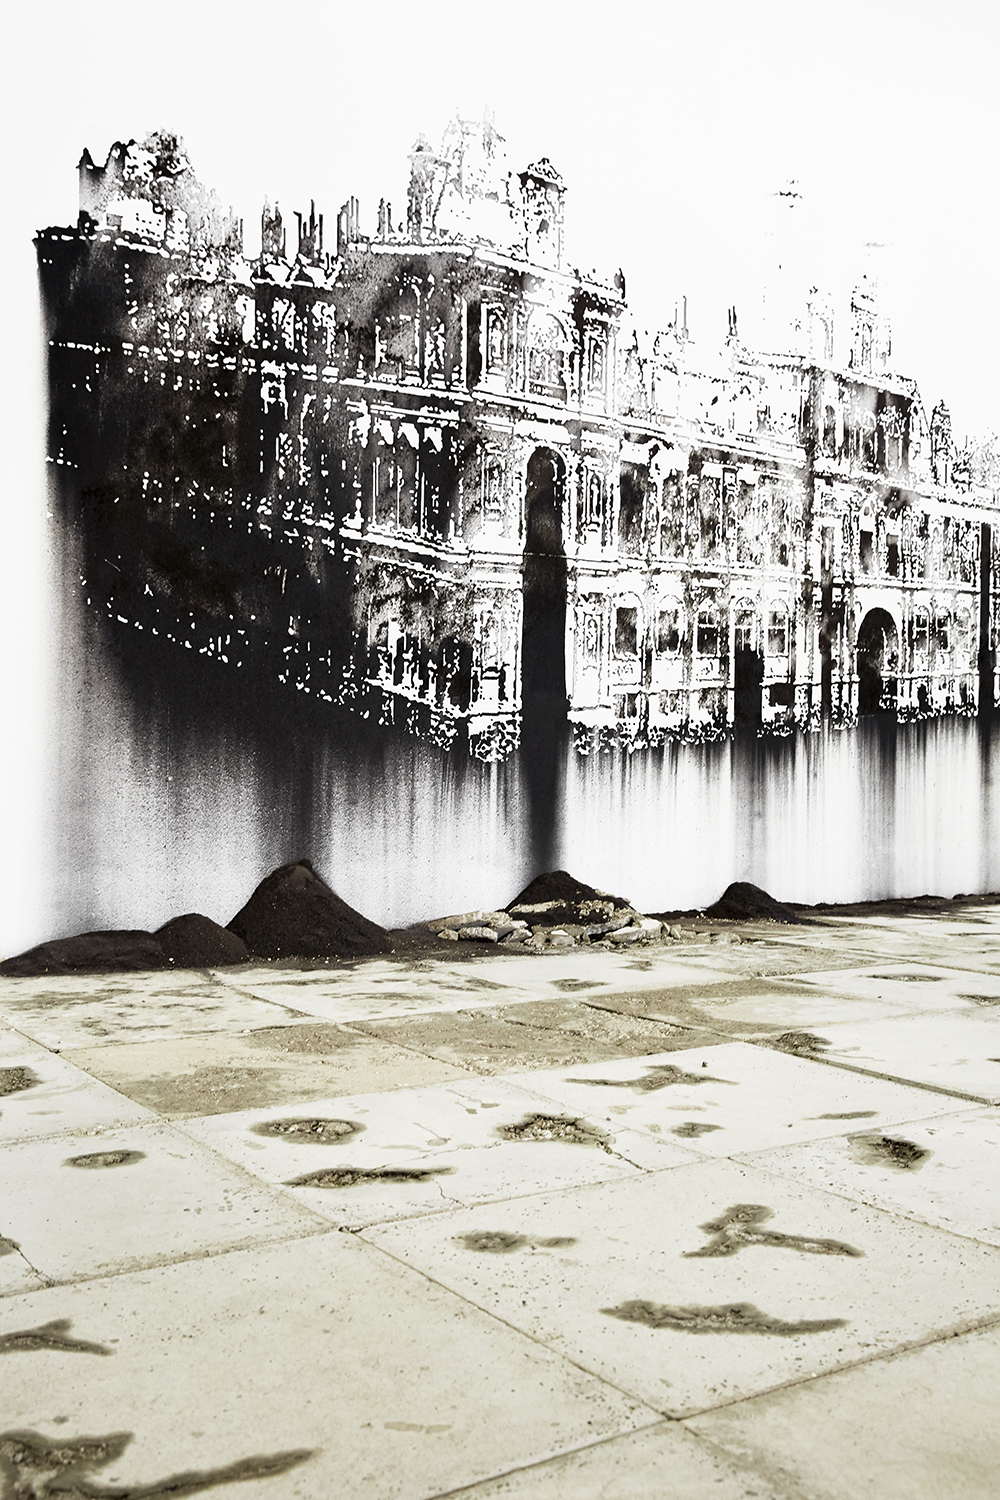 Notre monde brûle, Nicolas Daubanes - L'huile et l'eau (Palais de Tokyo)